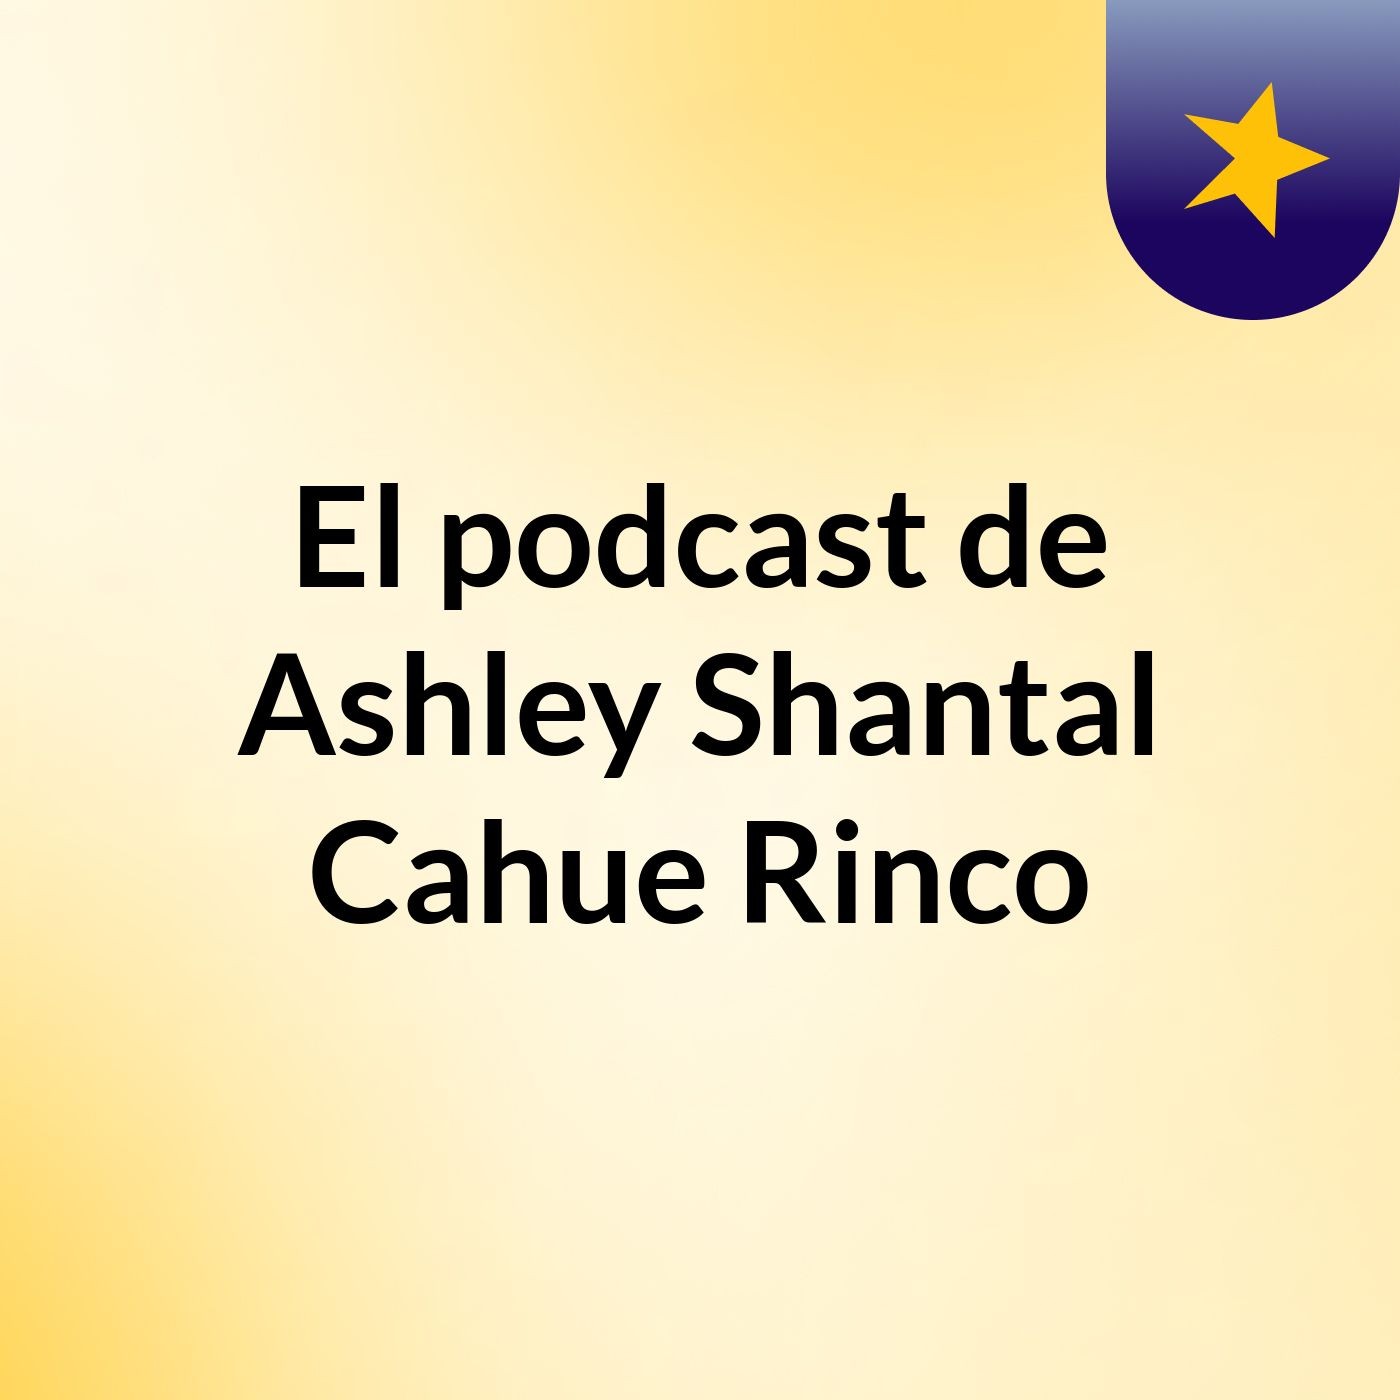 El podcast de Ashley Shantal Cahue Rinco